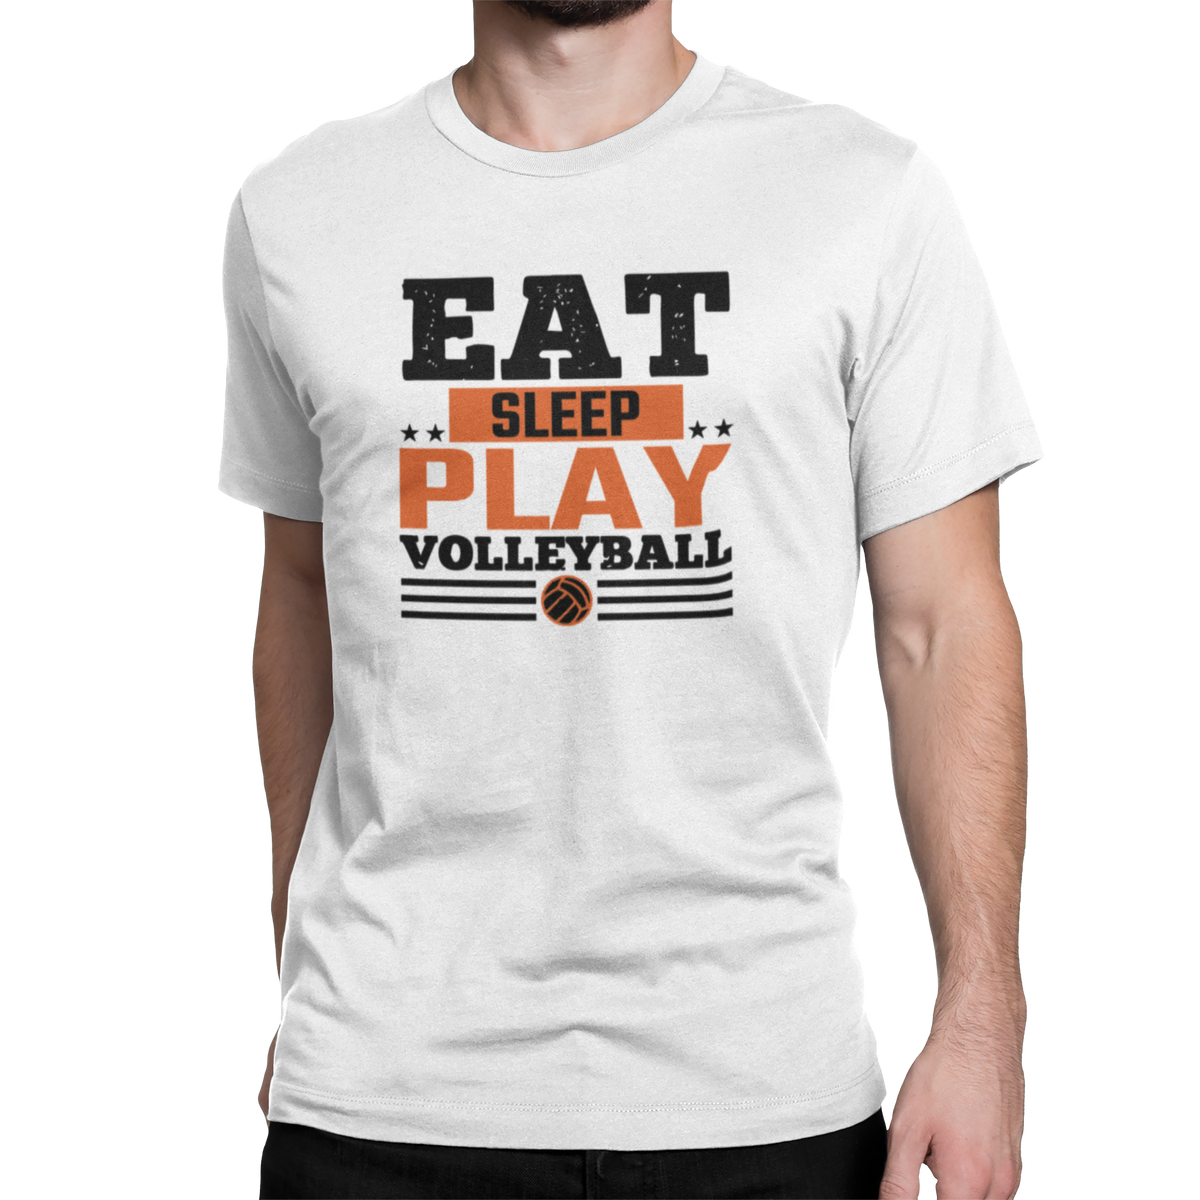 Nome do produto: Eat Sleep Play Volleyball